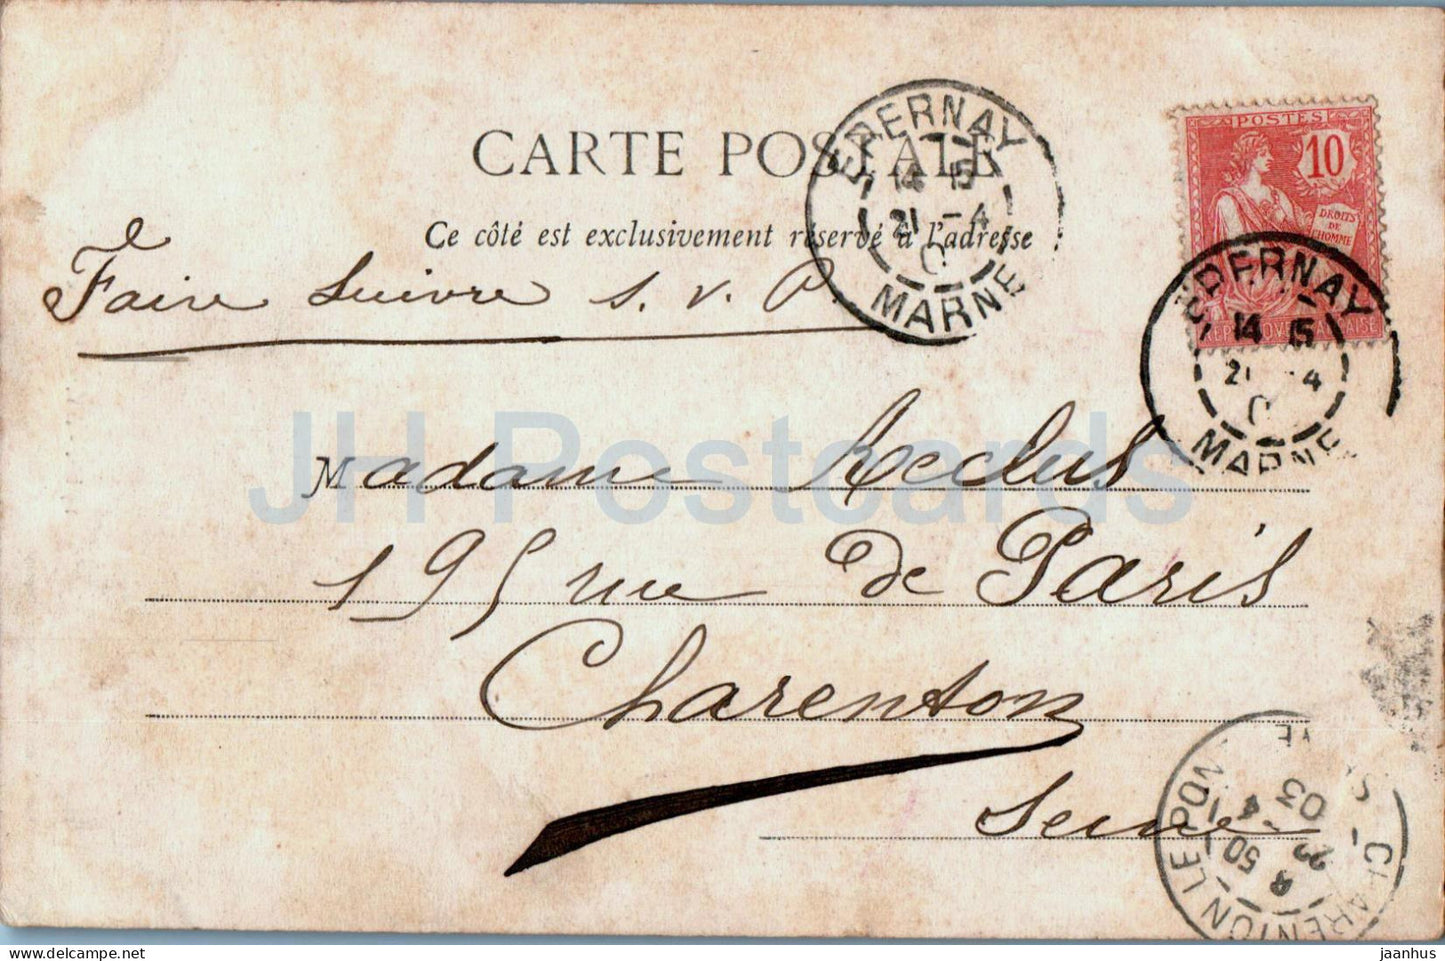 Ay - Eglise - Au Pays du Champagne - Les Vignobles de la Vallee de la Marne 1 14 - alte Postkarte - 1903 - Frankreich - gebraucht 